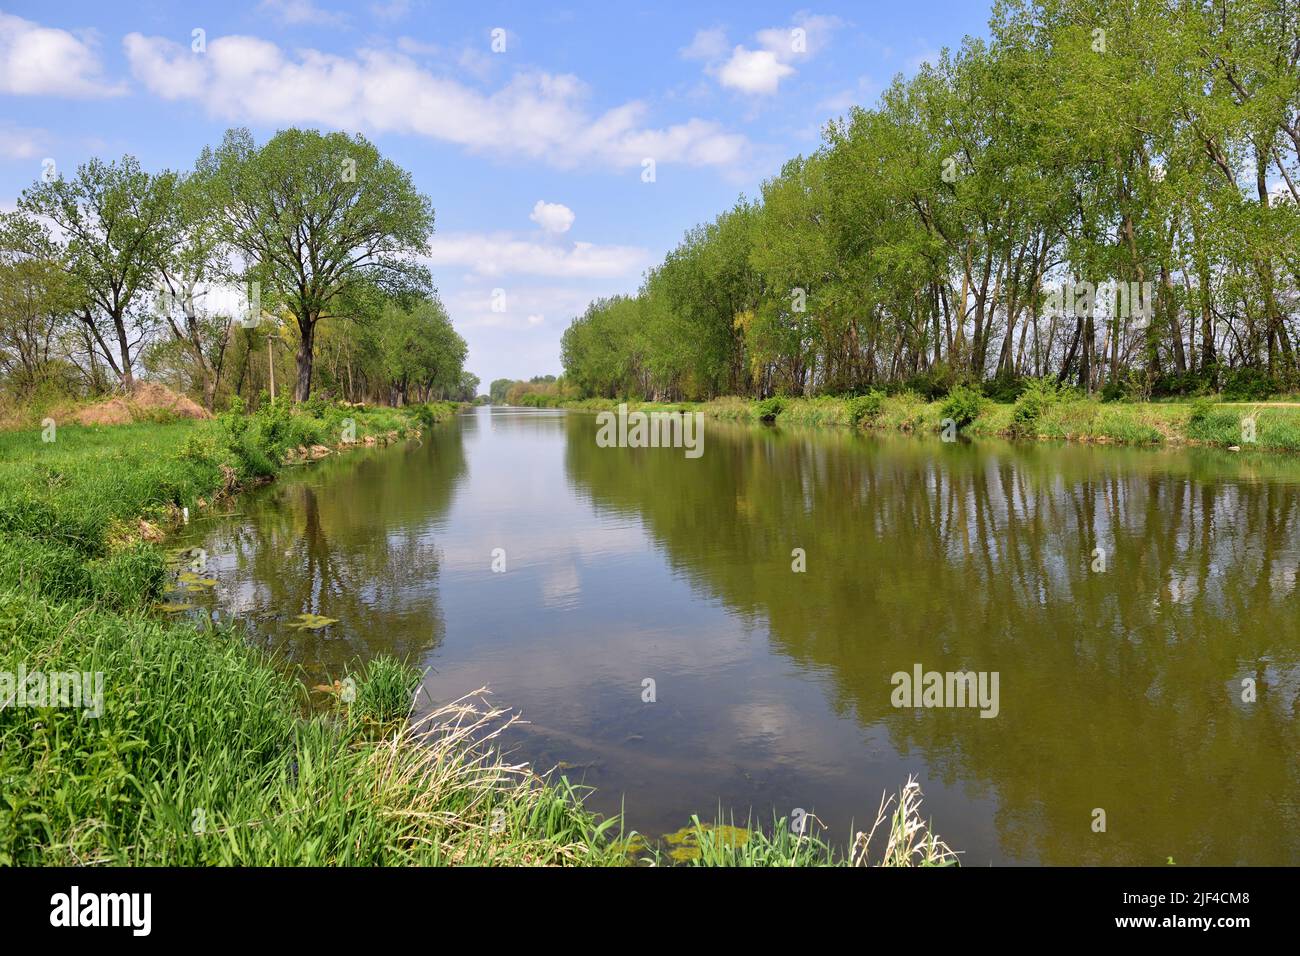 Annawan, Illinois, EE.UU. El agua del Canal de Hennepin refleja los árboles a lo largo de sus orillas a medida que fluye a través de una sección rural del noroeste de Illinois. Foto de stock